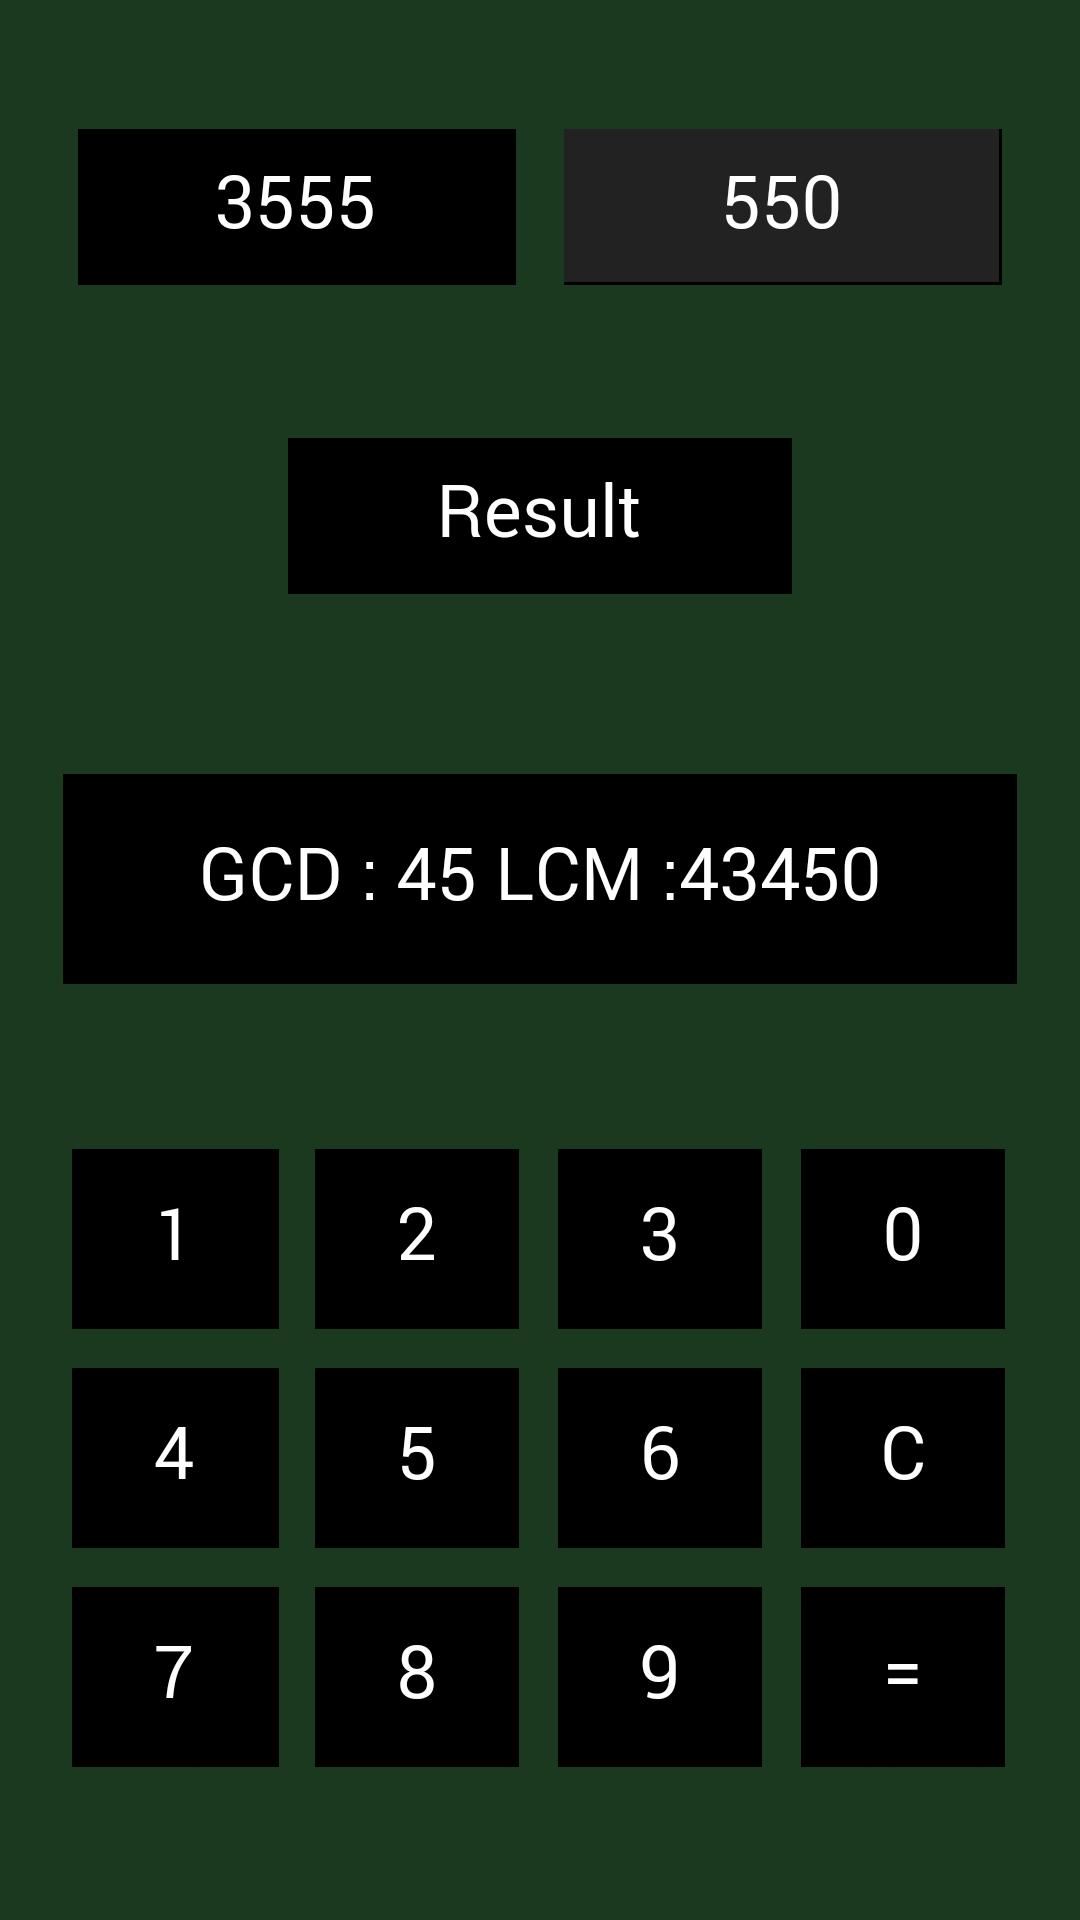 Gcd Lcm计算器 最大公约数lcm安卓下载 安卓版apk 免费下载